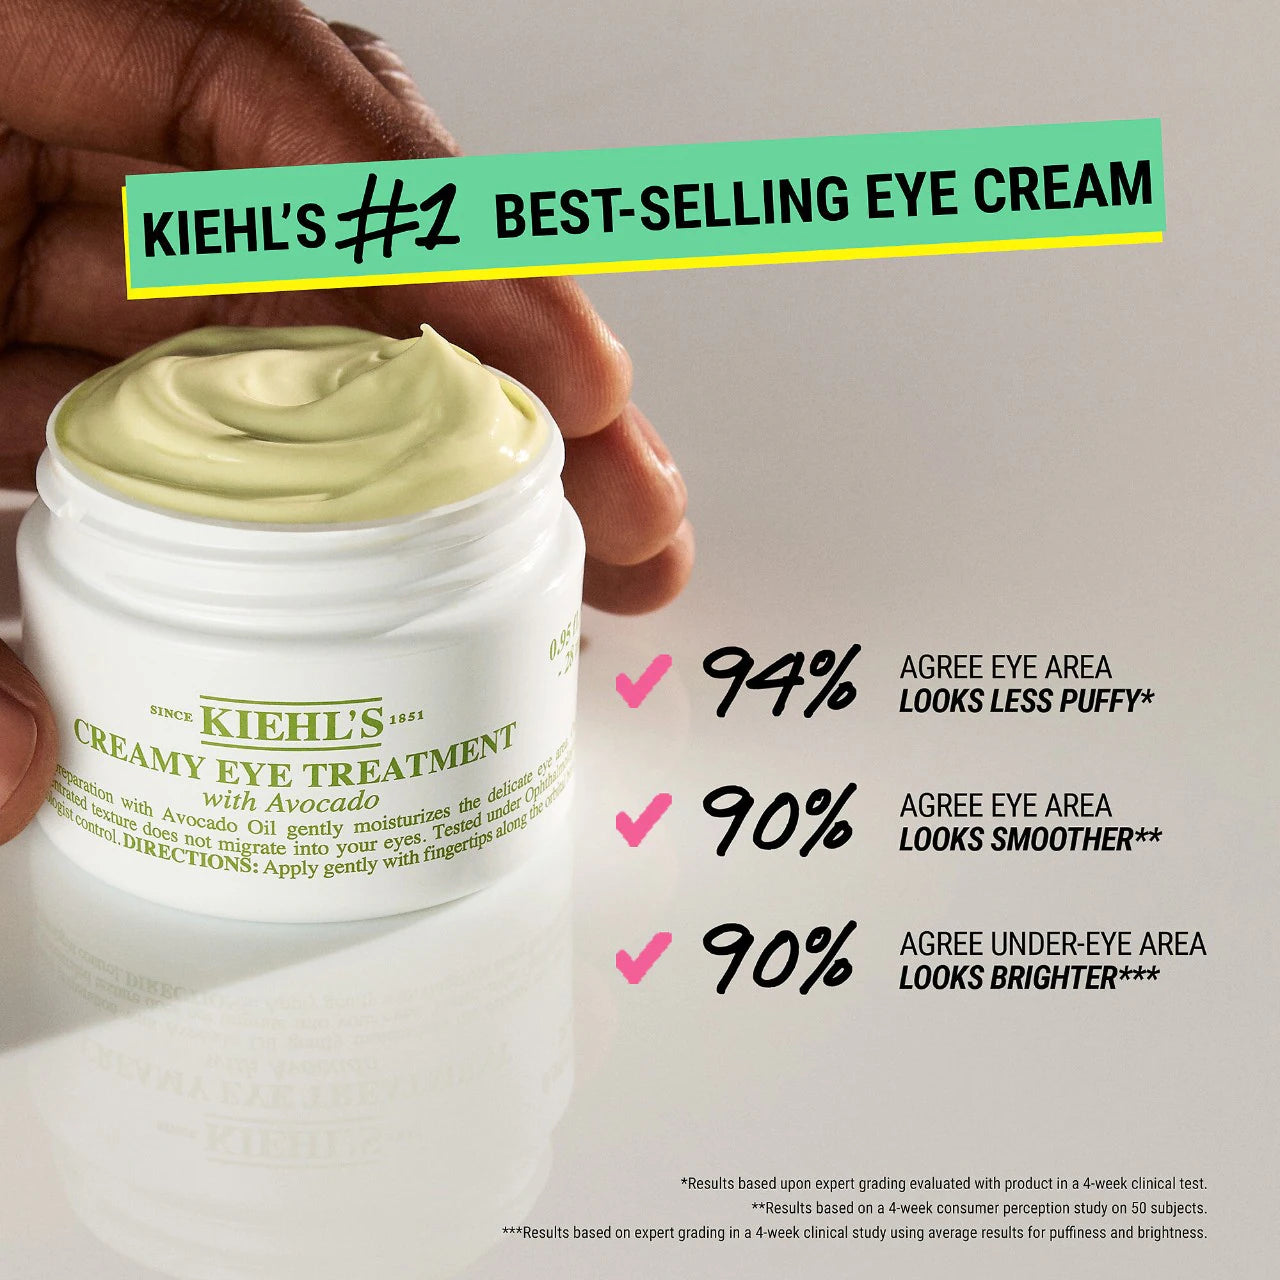 Kiehl's - Creamy Eye Treatment with Avocado